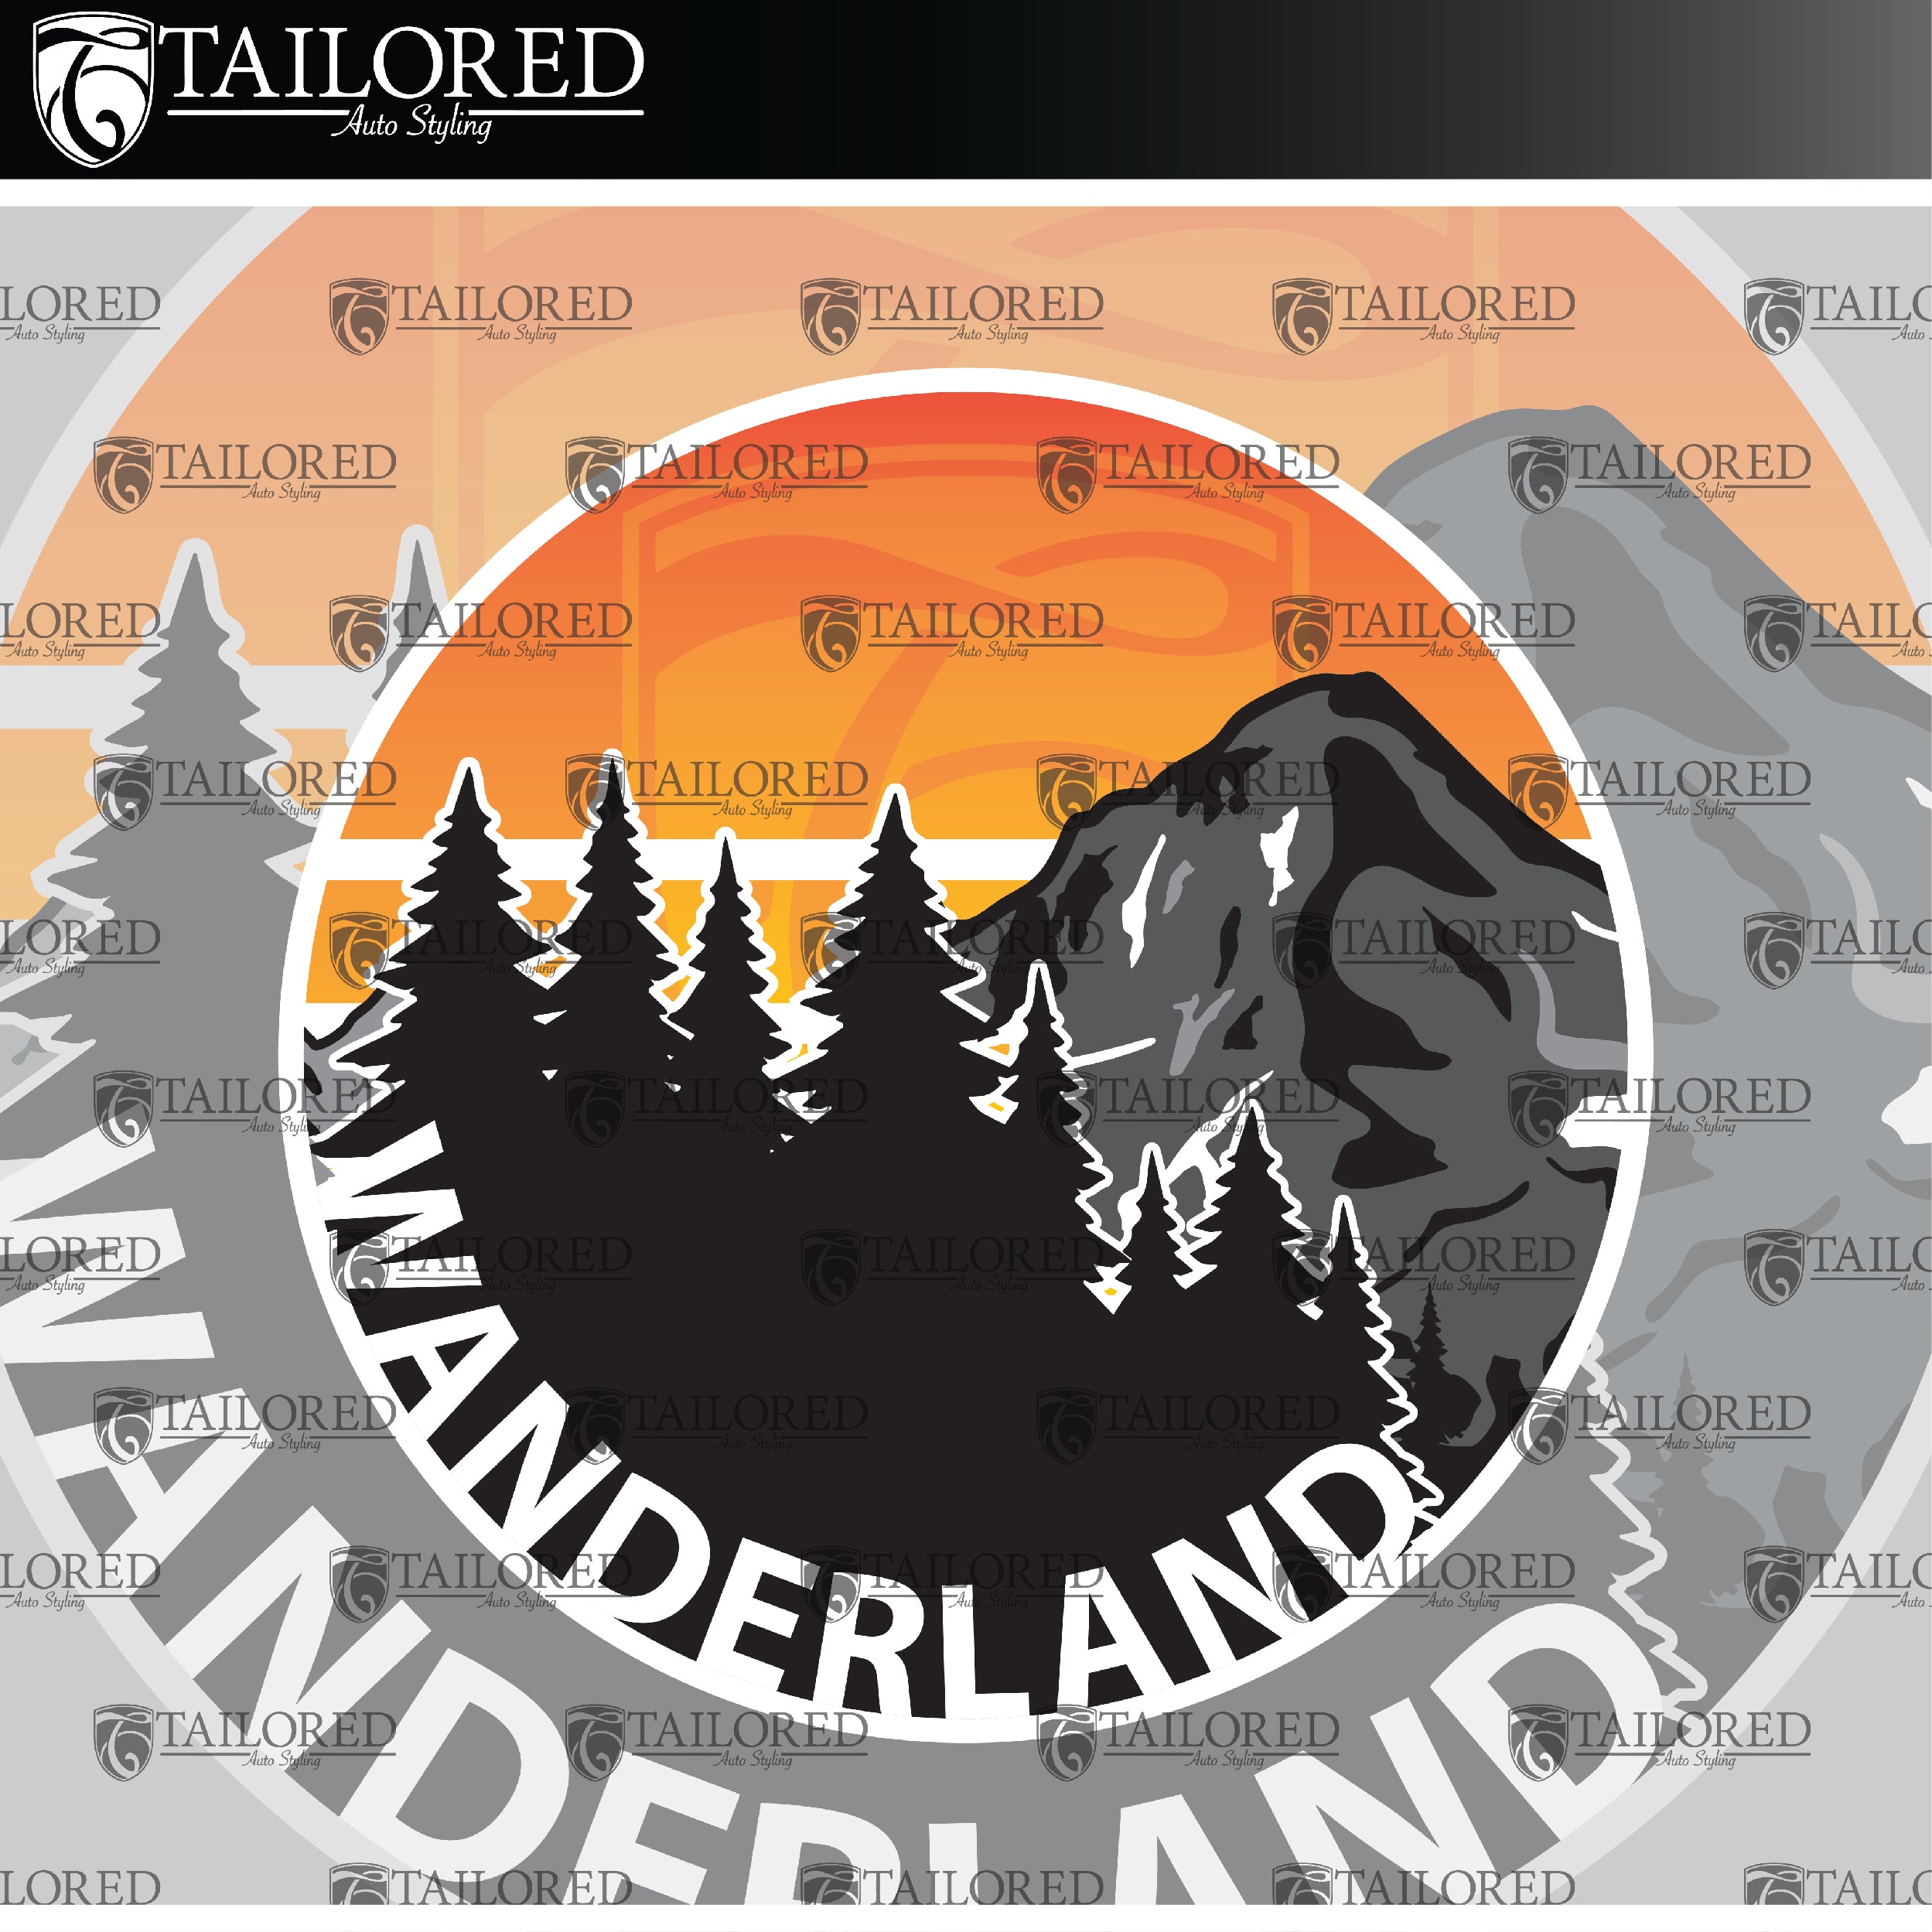 Wanderland Window Banner + Sticker Pack - Universal Fit